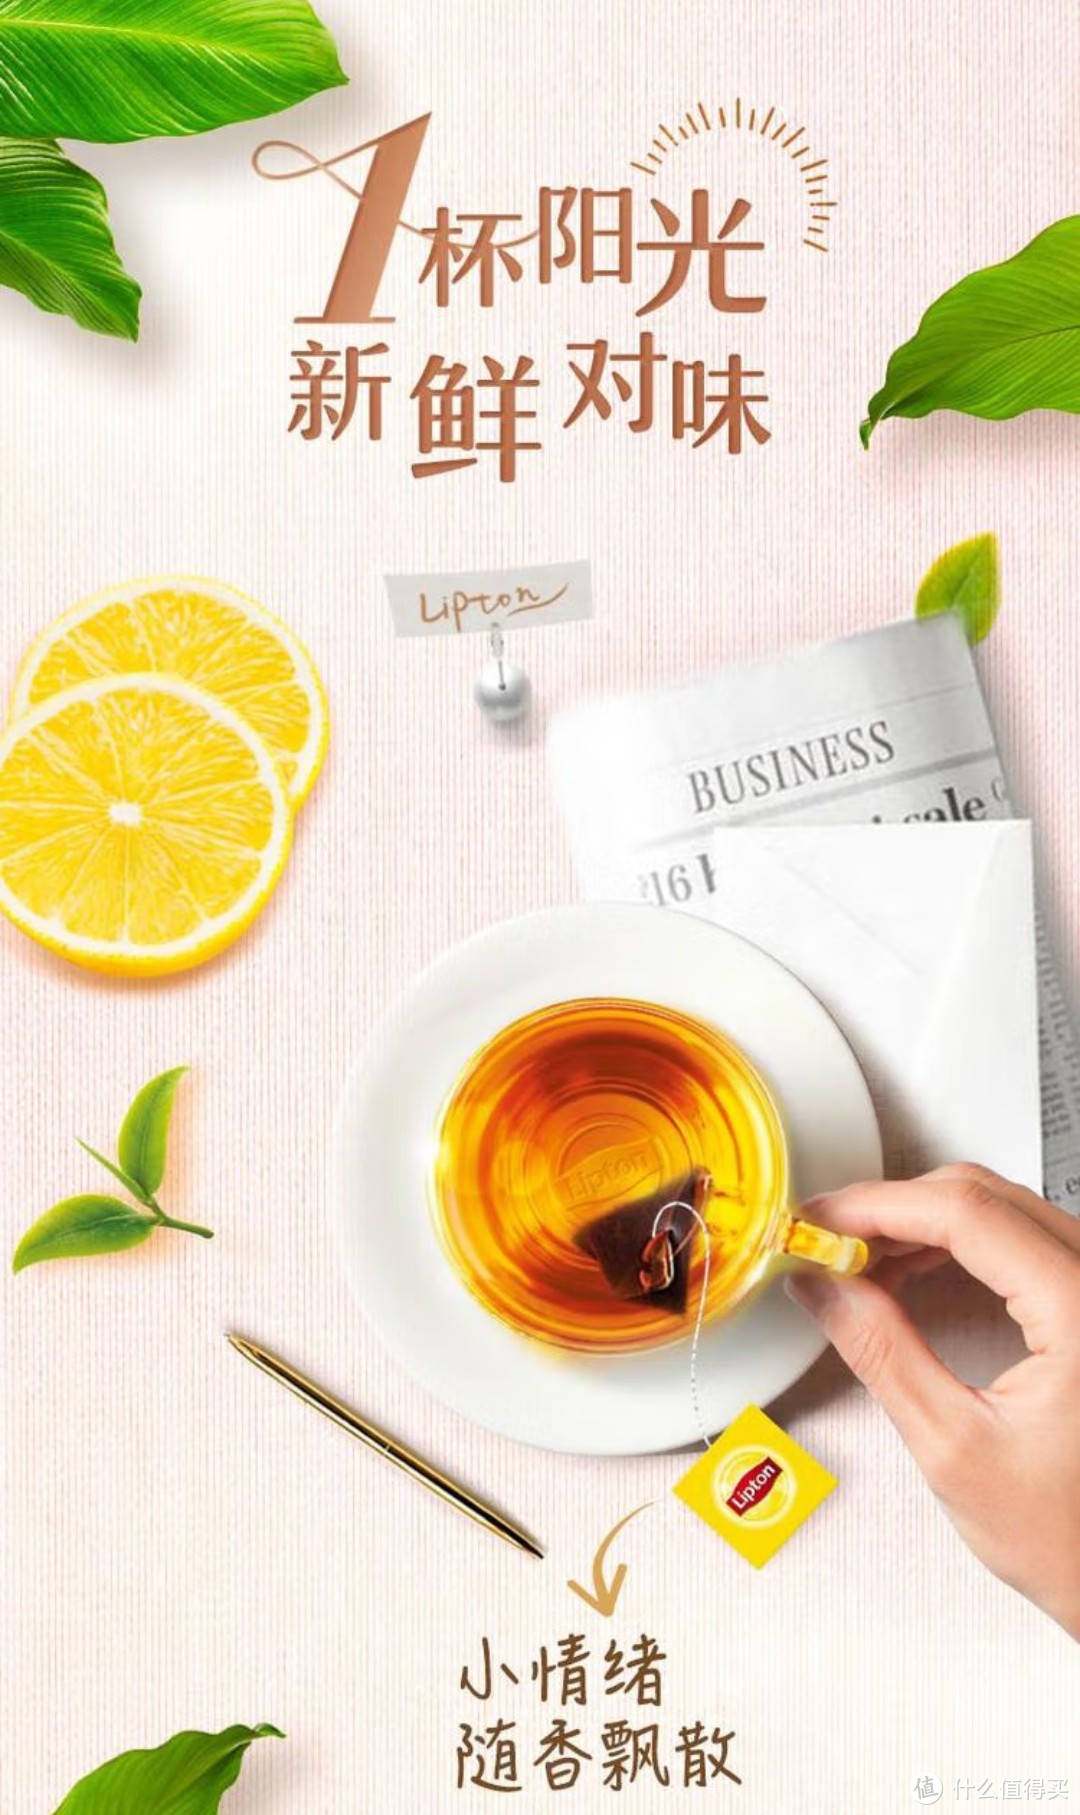 作为喝茶入门产品，袋泡茶产品简单介绍，适合收藏，看看产品在适合怎样饮用。